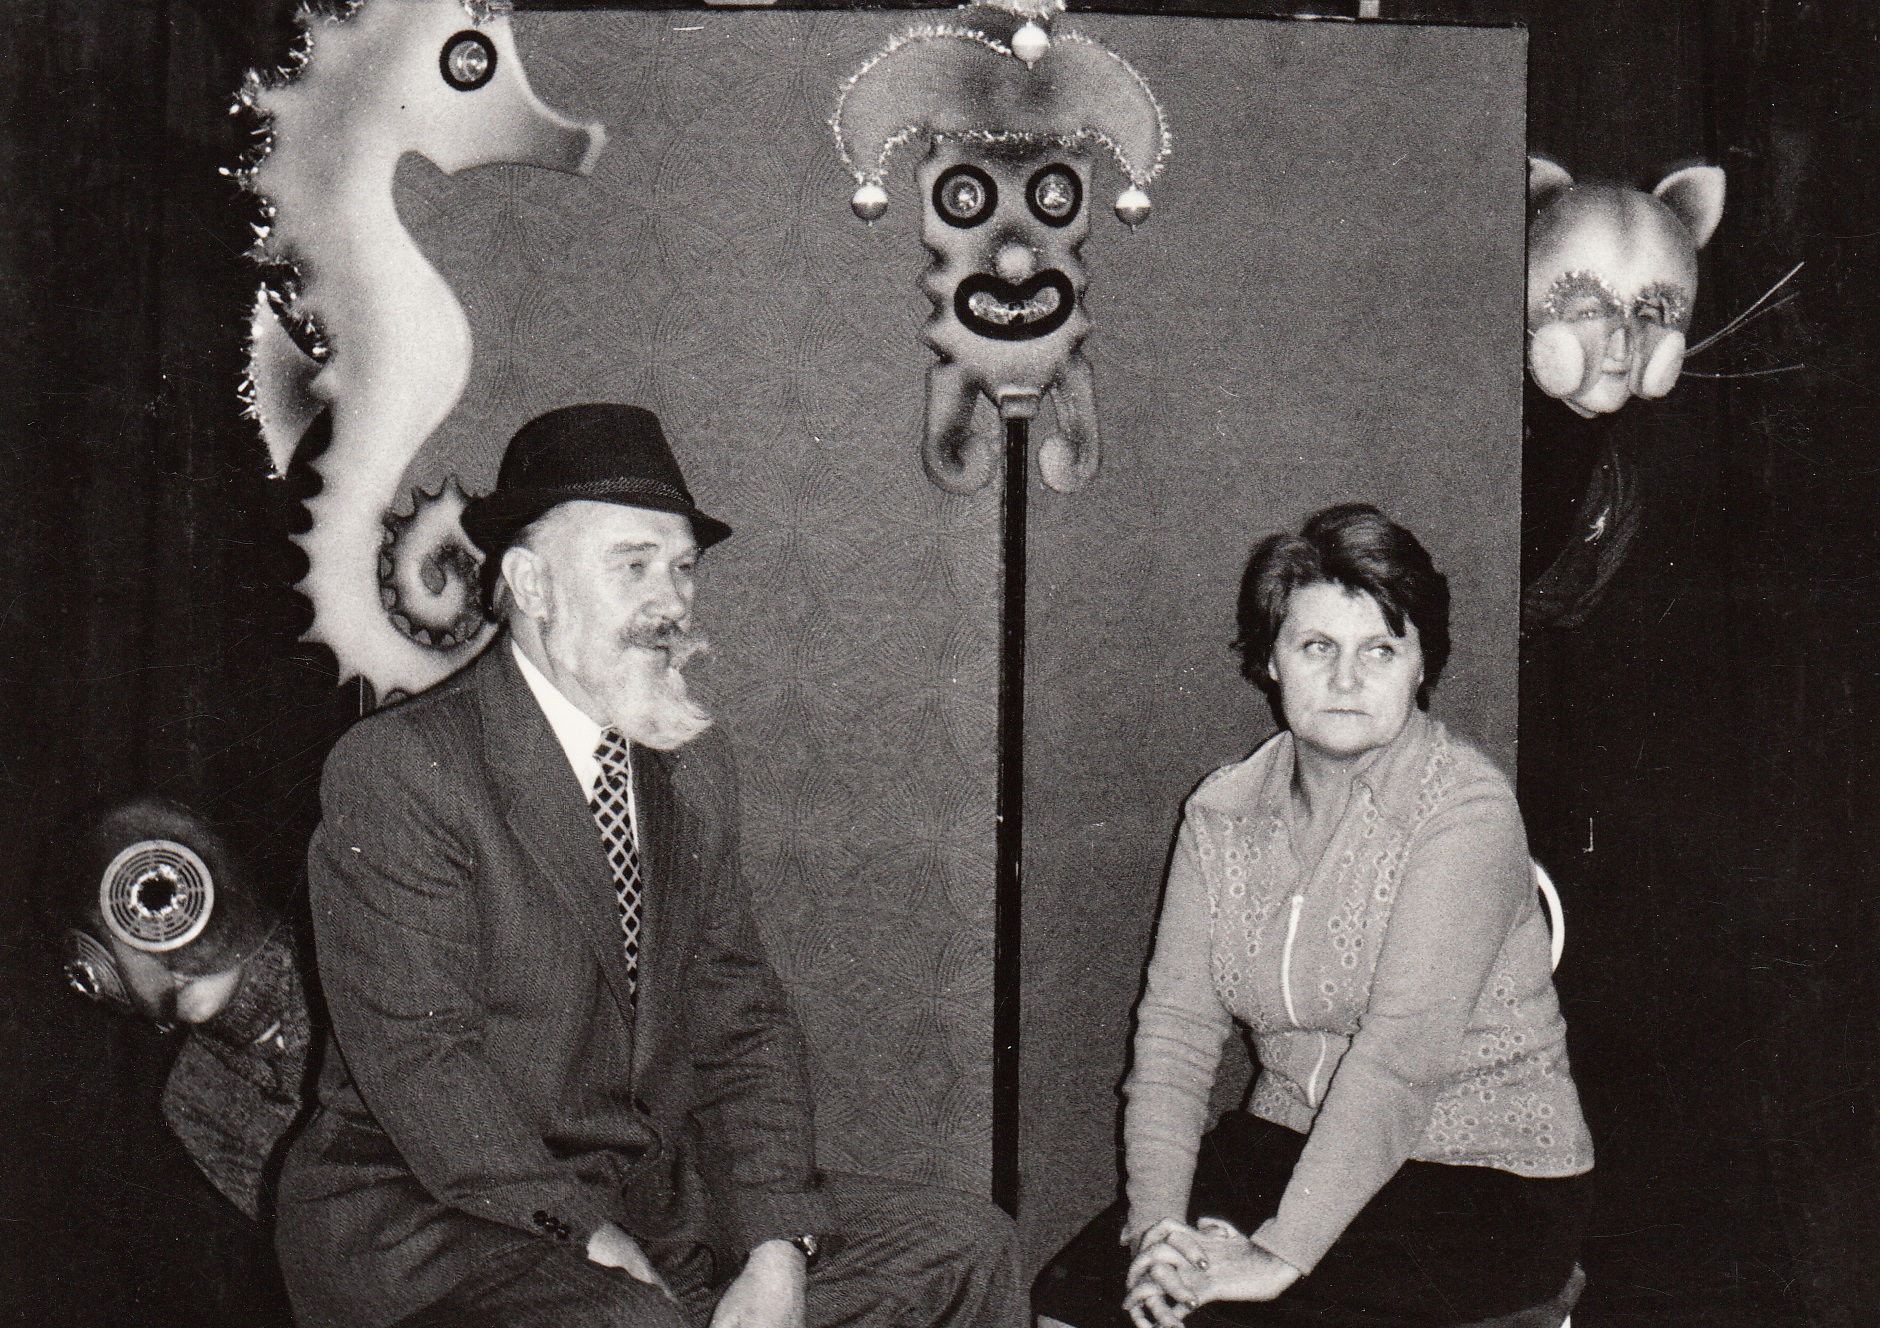 Daugybei jaunųjų panevėžiečių kelius į meno pasaulį padėjo tiesti lėlių teatro įkūrėjai Albertas ir Julija Stepankos. Jų dėka daugiau nei tris dešimtis metų mieste sruveno kūrybos ir įkvėpimo šaltinis